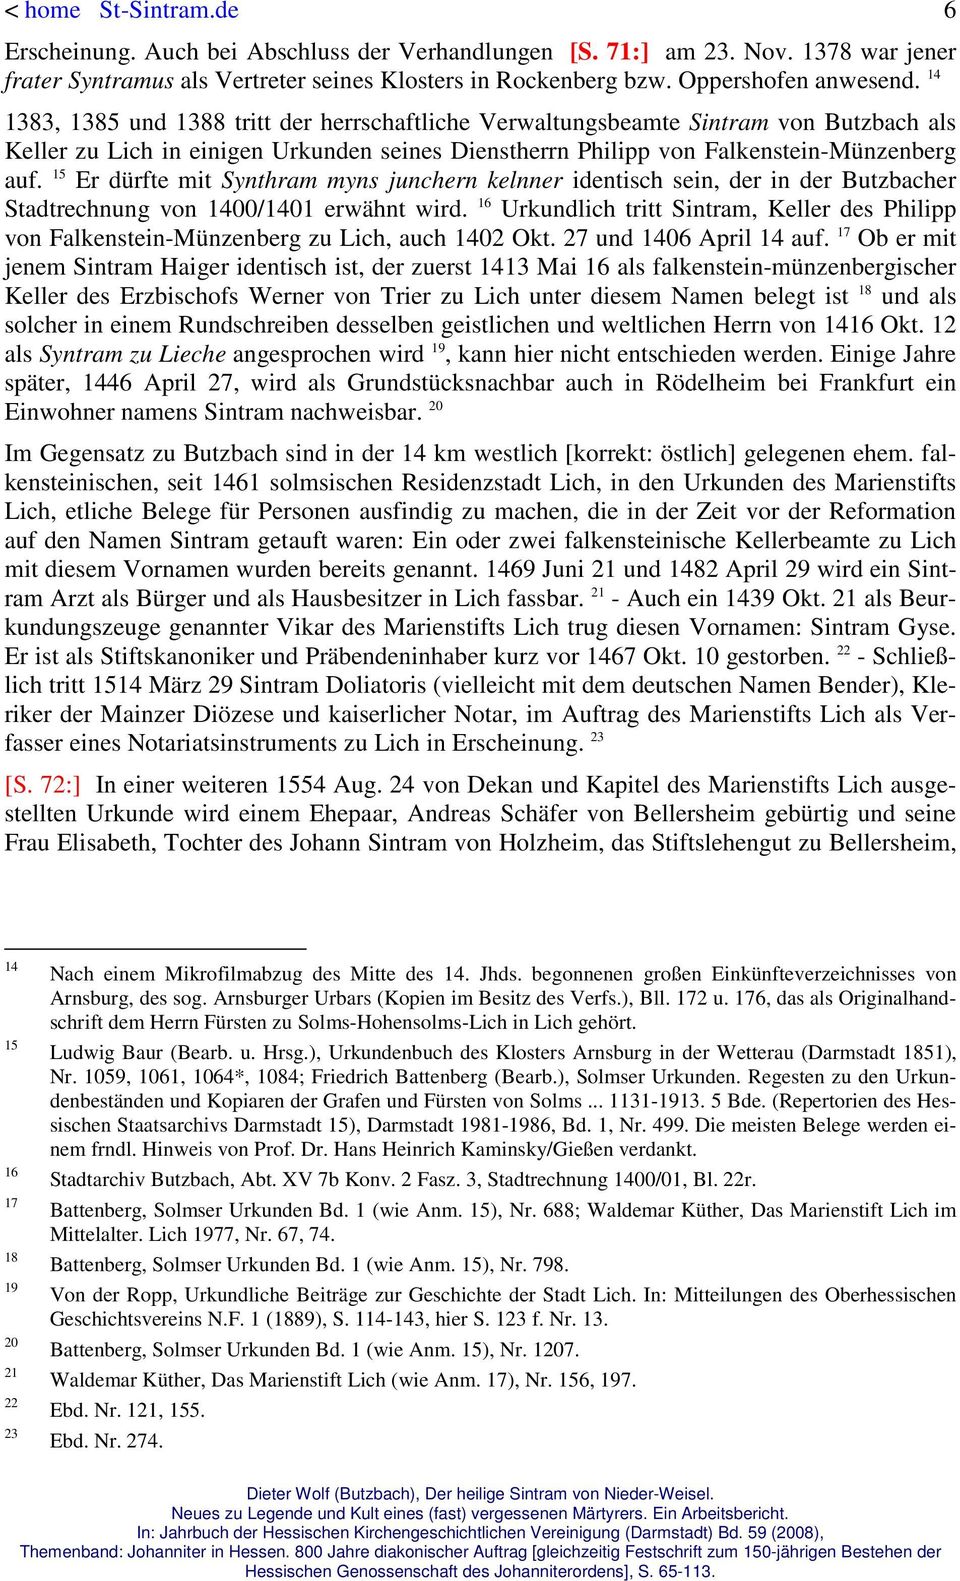 15 Er dürfte mit Synthram myns junchern kelnner identisch sein, der in der Butzbacher Stadtrechnung von 1400/1401 erwähnt wird.